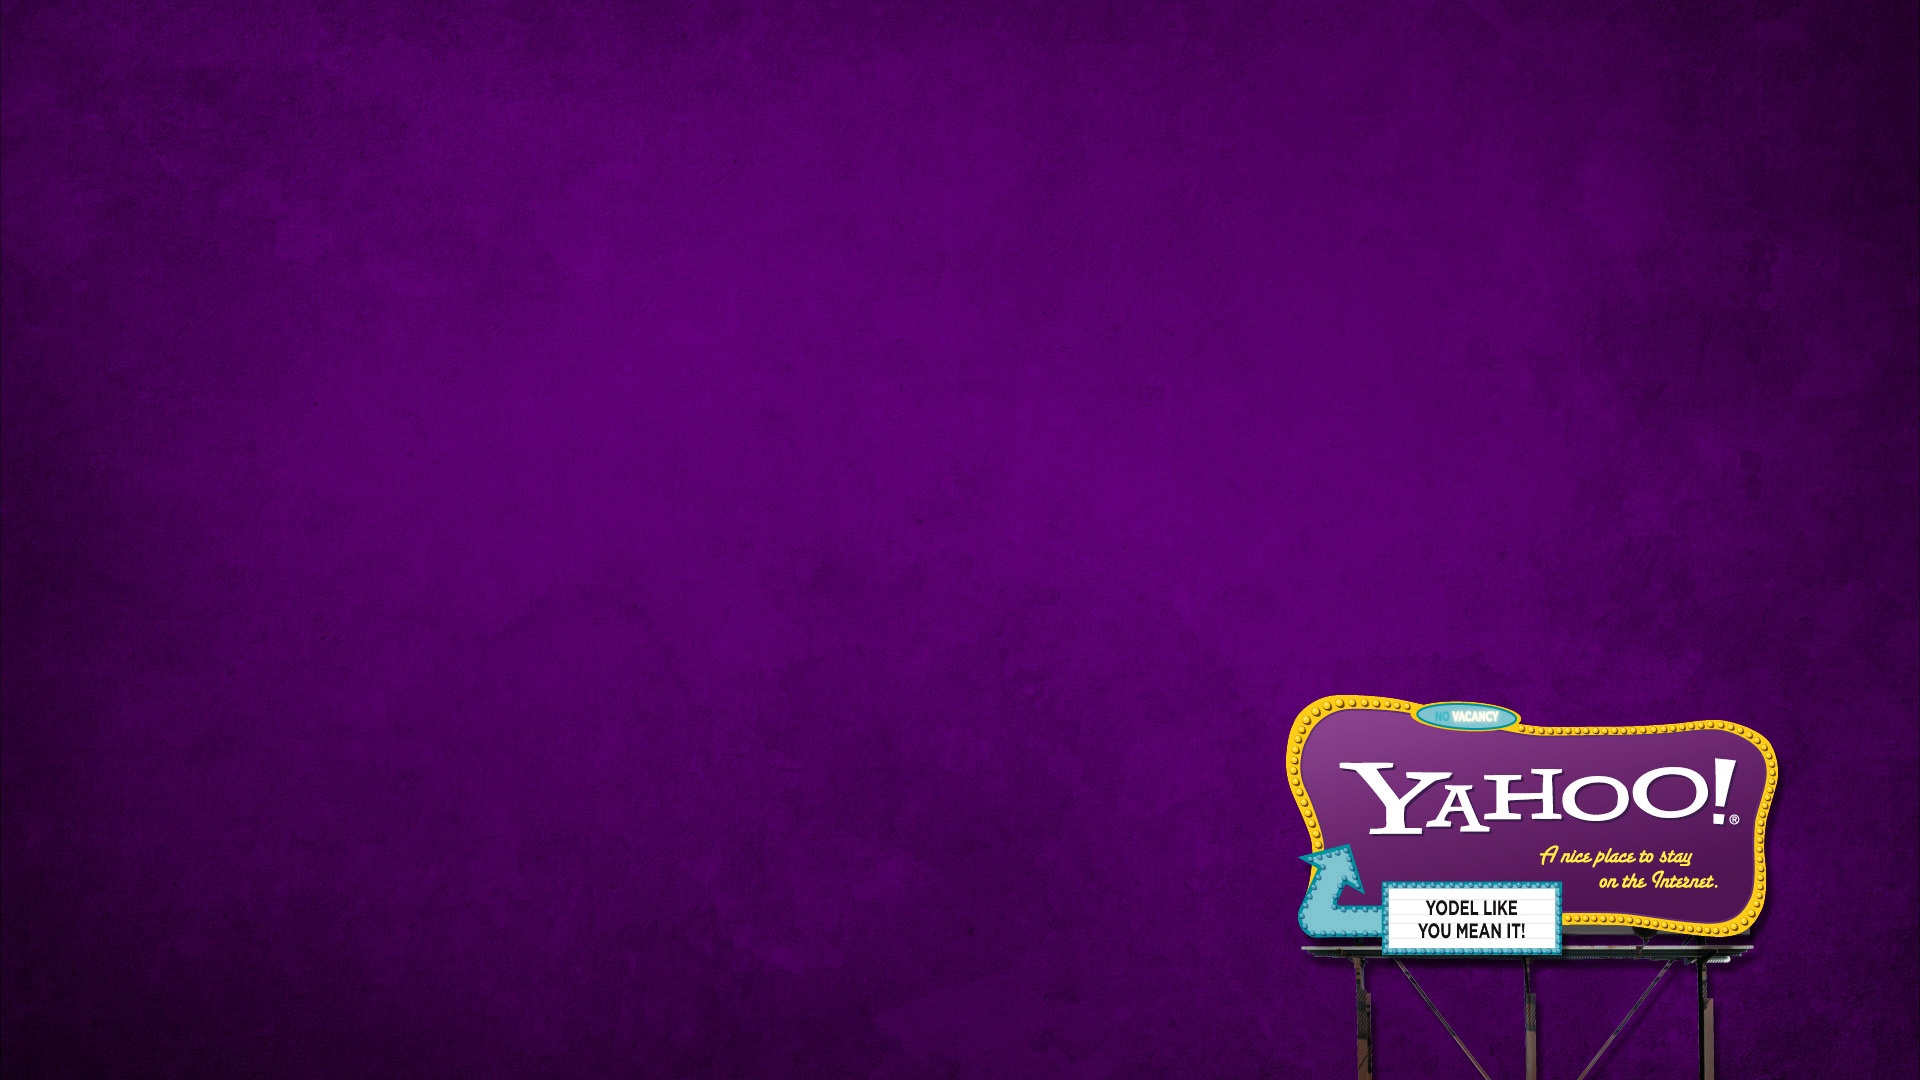 Yahoo Wallpaper Brands